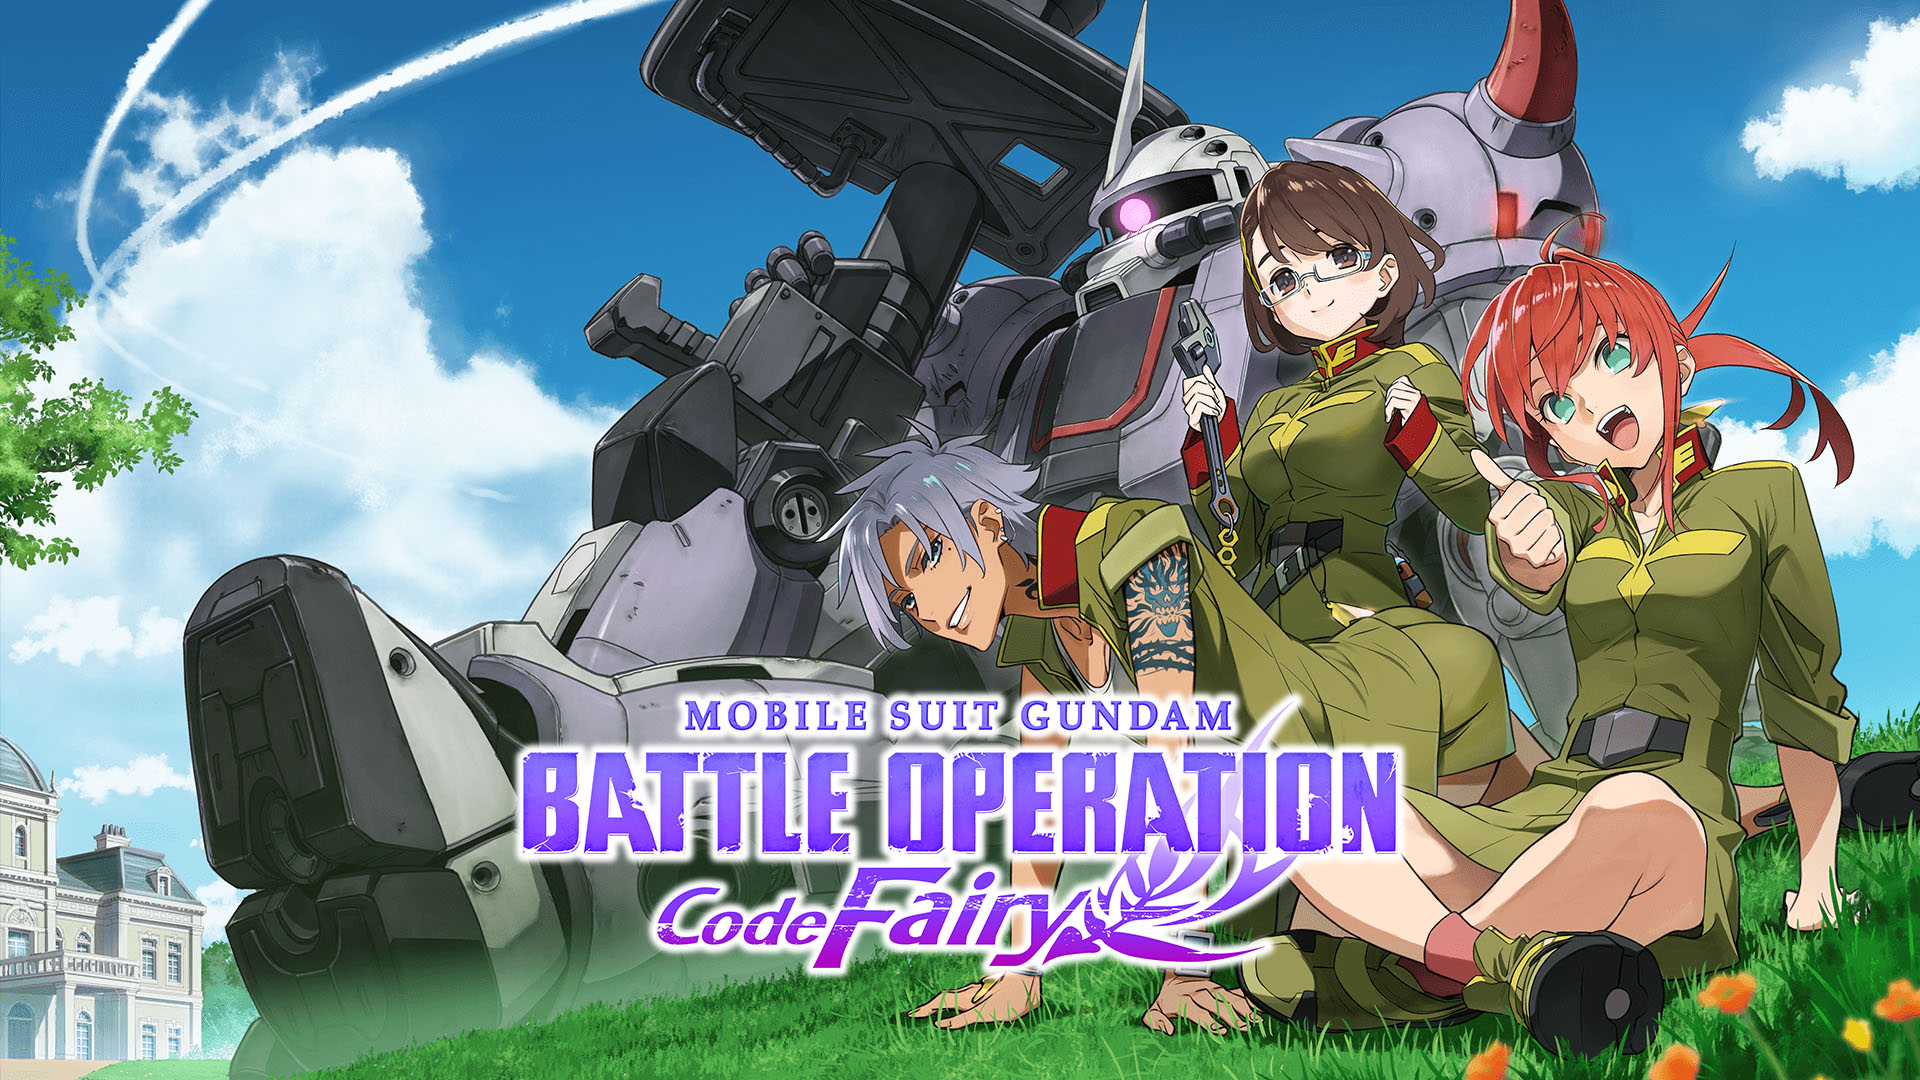 mobile_suit_gundam_code_fairy_splash The Girls Suit Up in Mobile Suit Gundam: Battle Operation Code Fairy Vol. 1!